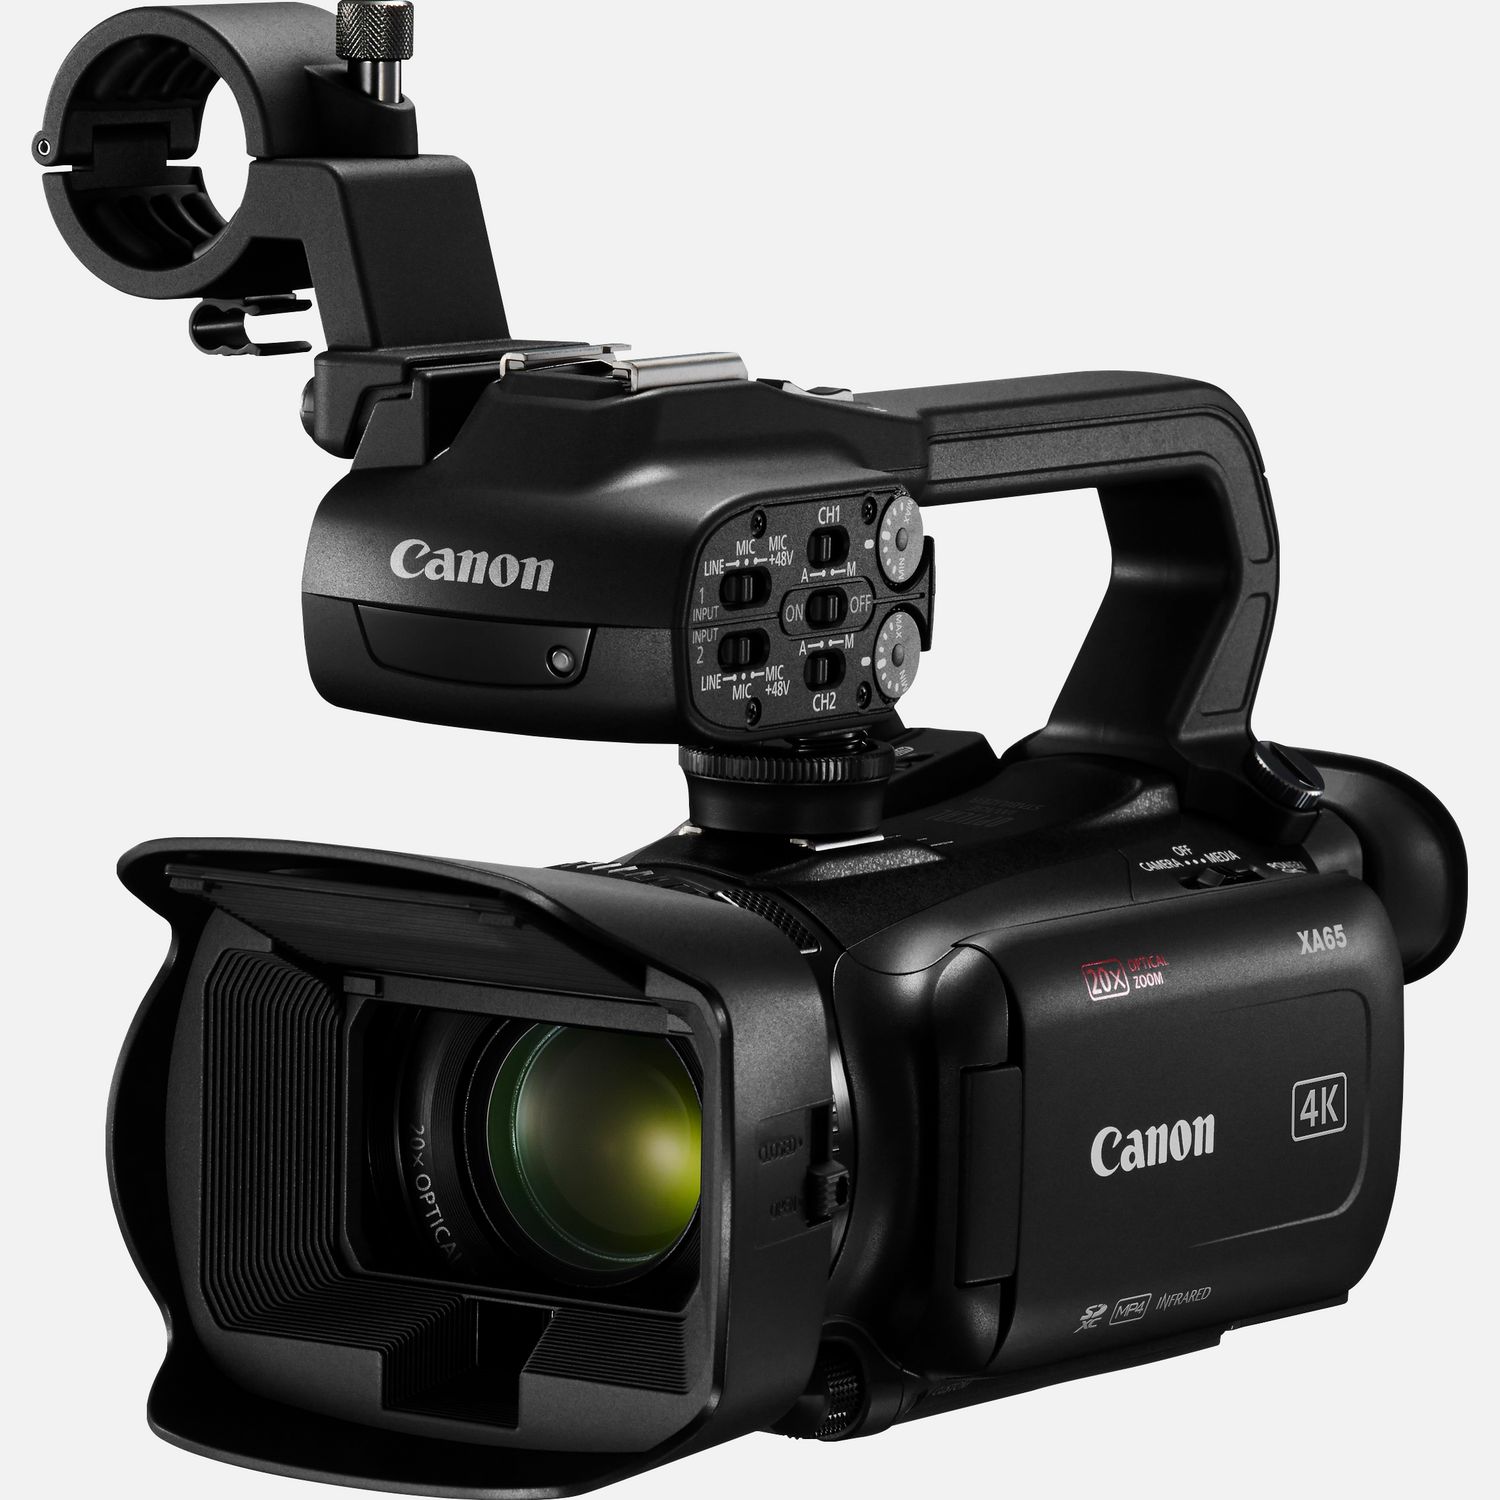 Die Canon XA65 ist eine leichte, professionelle 4K-Videokamera, die sich perfekt fr die Berichterstattung, den Bildungsbereich oder Dokumentarfilme eignet. Der Camcorder wurde speziell fr flexible Videoaufnahmen konzipiert und zeichnet hochwertiges Material auf, das dank 3G-SDI- und HDMI-Ausgngen problemlos in einen breiteren Workflow integriert werden kann. Neben der hervorragenden Oversampling-HD-Verarbeitung, dem fortschrittlichen Autofokus, dem Canon Objektiv mit 20fach optischem Zoom und dem UVC-HD-Livestreaming via USB-C ber einen Computer, knnen die Aufnahmen auch im XF-AVC- oder im MP4-Format aufgezeichnet und spter weitergegeben werden.  Vorteile      Der 4K 1/2,3-Zoll-Typ CMOS-Sensor und der DIGIC DV6 Bildprozessor sorgen fr atemberaubende 4K UHD- und hervorragende FullHD-Aufnahmen. Durch Oversampling der 4K-Sensordaten liefert der Camcorder auch erstklassige FullHD-Videos.          Das Canon Objektiv deckt einen Brennweitenbereich von 29,3 mm-Weitwinkel (quivalent KB-Vollformat) bis zu enormen 601 mm mit Dynamic IS ab. Der Digitalzoom liefert eine 800-fache Vergrerung mit 5-Achsen-Bildstabilisierung.          Die einstellbare Fokussiergeschwindigkeit und das fortschrittliche Hybrid-AF-System ermglichen eine schnelle und przise Fokussierung.          Auf dem 3,5-Zoll LC-Display kannst du den gewnschten Fokuspunkt per Berhrung festlegen.          XF-AVC 4K UHD 160 Mbit/s wird mit 25p aufgenommen und FullHD 45 Mbit/s mit 50p/ 50i/ 25p. Wenn kleinere Dateien gewnscht werden, stehen MP4 4K mit 150 Mbit/s und 25p sowie Full HD mit 35/17 Mbit/s und 50p/25p zur Verfgung.          Zu den Aufnahmeoptionen gehren 3G-SDI, HDMI, die gleichzeitige Backup- und fortlaufende Aufzeichnung ber zwei SD-Karten sowie der Infrarot-Modus.          Auerdem stehen Zeitlupenaufnahmen in Full HD mit halber Geschwindigkeit oder Zeitrafferaufnahmen in 4K/Full HD mit bis zu 1.200-facher Geschwindigkeit zur Verfgung. Eine Farbabstimmung mit anderen Canon Kameras ist ber das Men fr benutzerdefinierte Bildeinstellungen mglich.          Du kannst HD-Videos via UVC mit einem Computer live streamen und bei Bedarf auch einen Datums- und Zeitstempel einblenden. Zwei XLR-Anschlsse am abnehmbaren Griff und 4-Kanal-Linear-PCM bieten zudem professionelle Audiooptionen.          Lieferumfang       XA65 professioneller Camcorder         Tragegriff HDU-1         PD-E1 USB-Netzadapter         BP-820 Akku         Streulichtblende mit integriertem Objektivschutz         Mikrofonhalter              Technische Daten              4K UHD / 25p  MP4 bis zu 150 Mbit/s, XF-AVC bis zu 160 Mbit/s                20fach optischer Zoom  Weitwinkel-Zoomobjektiv mit einem Brennweitenbereich von 29,3  601mm (quivalent KB-Vollformat)                HD-Verarbeitung mit Oversampling  verwendet den 4K UHD-Sensor, um erstklassige Full HD-Bilder zu generieren                Optischer Bildstabilisator  Optimierter optischer 5-Achsen-Bildstabilisator mit Dynamic IS                Infrarot  IR-Modus fr hochwertige Videoaufnahmen bei extrem wenig bis gar keinem Umgebungslicht                Touchscreen  Einfache Fokuspunkt- und Kamerasteuerung ber 3,5-Zoll-Touchscreen                4-Kanal-Audio  Lineares PCM-Audio und 2 XLR-Eingnge plus integriertes Mikrofon                Zwei Steckpltze  Zwei Kartenslots fr die gleichzeitige oder fortlaufende Aufnahme auf SD-Karte                USB-C  Video-Livestreaming ber Mac und PC oder den GPS-Empfnger GP-E2 von Canon          Alle technischen Daten zeigen